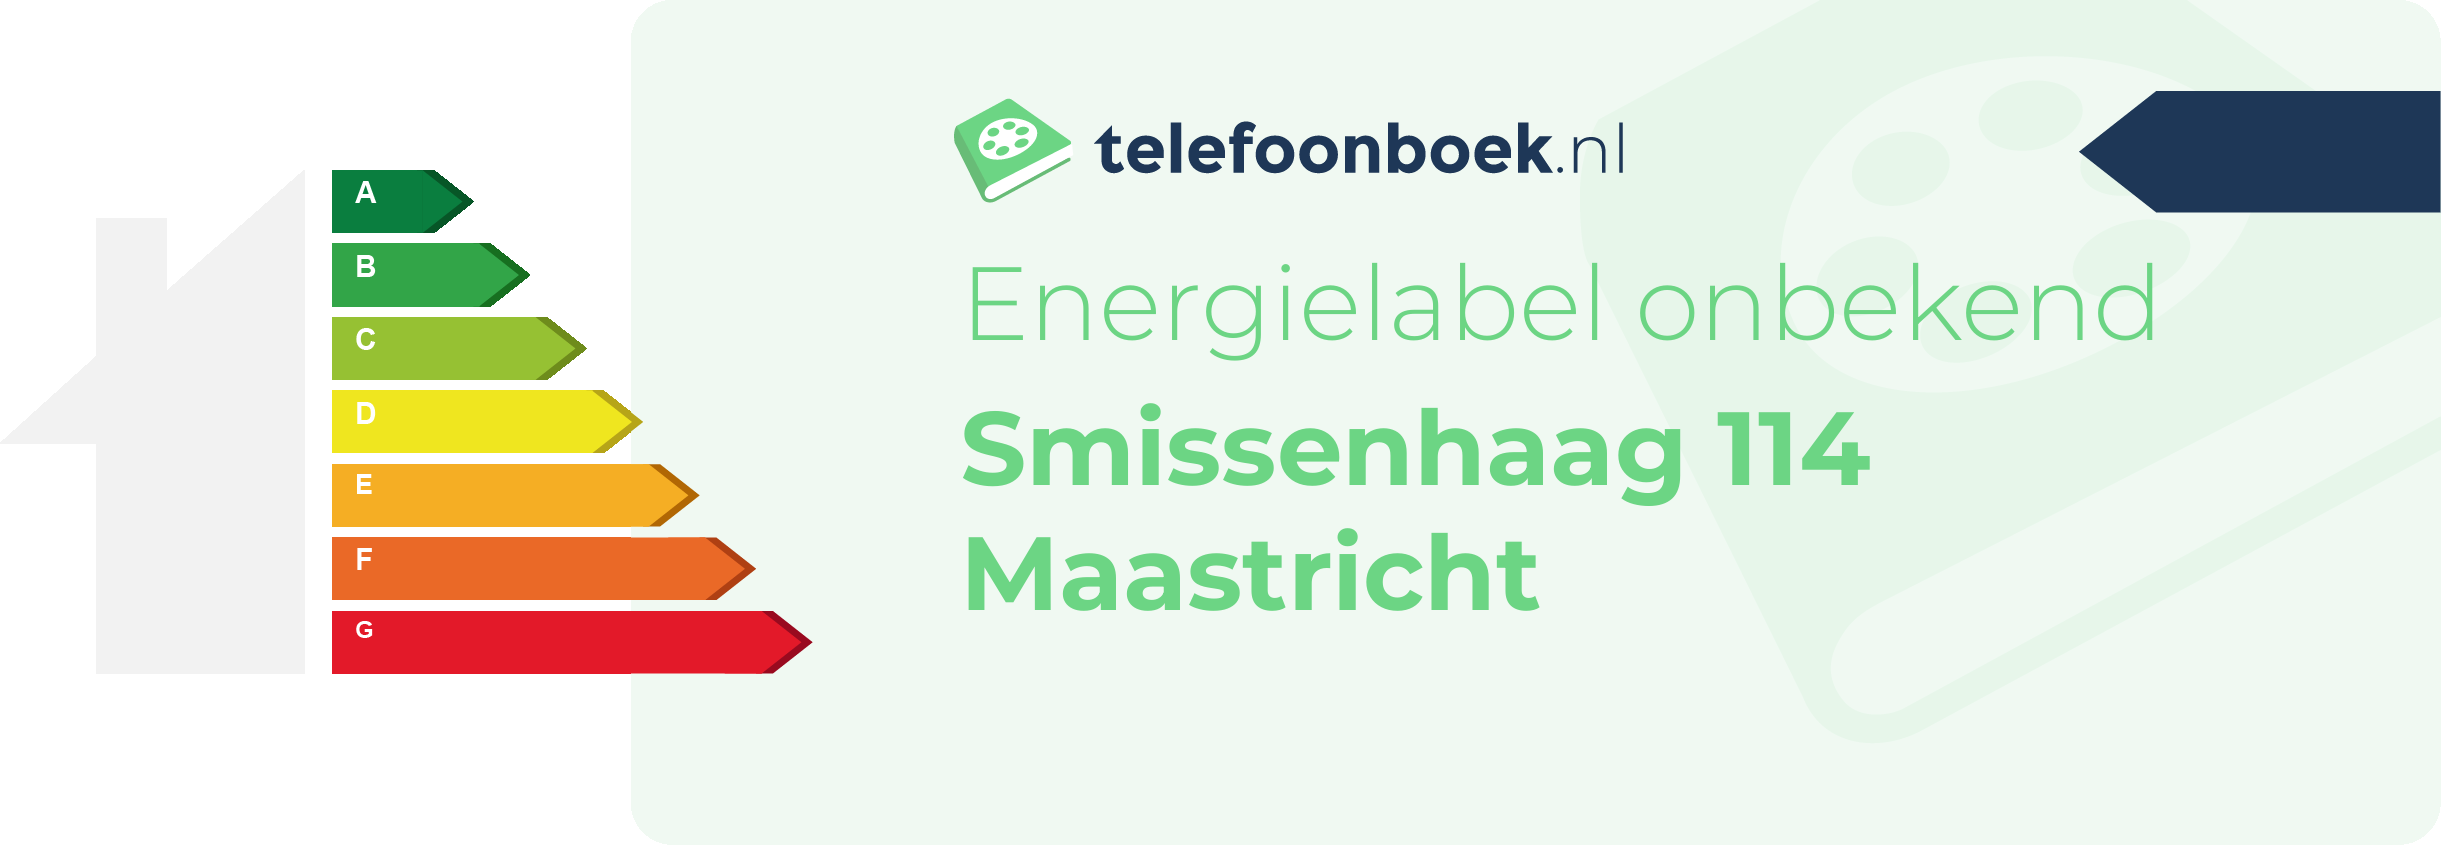 Energielabel Smissenhaag 114 Maastricht